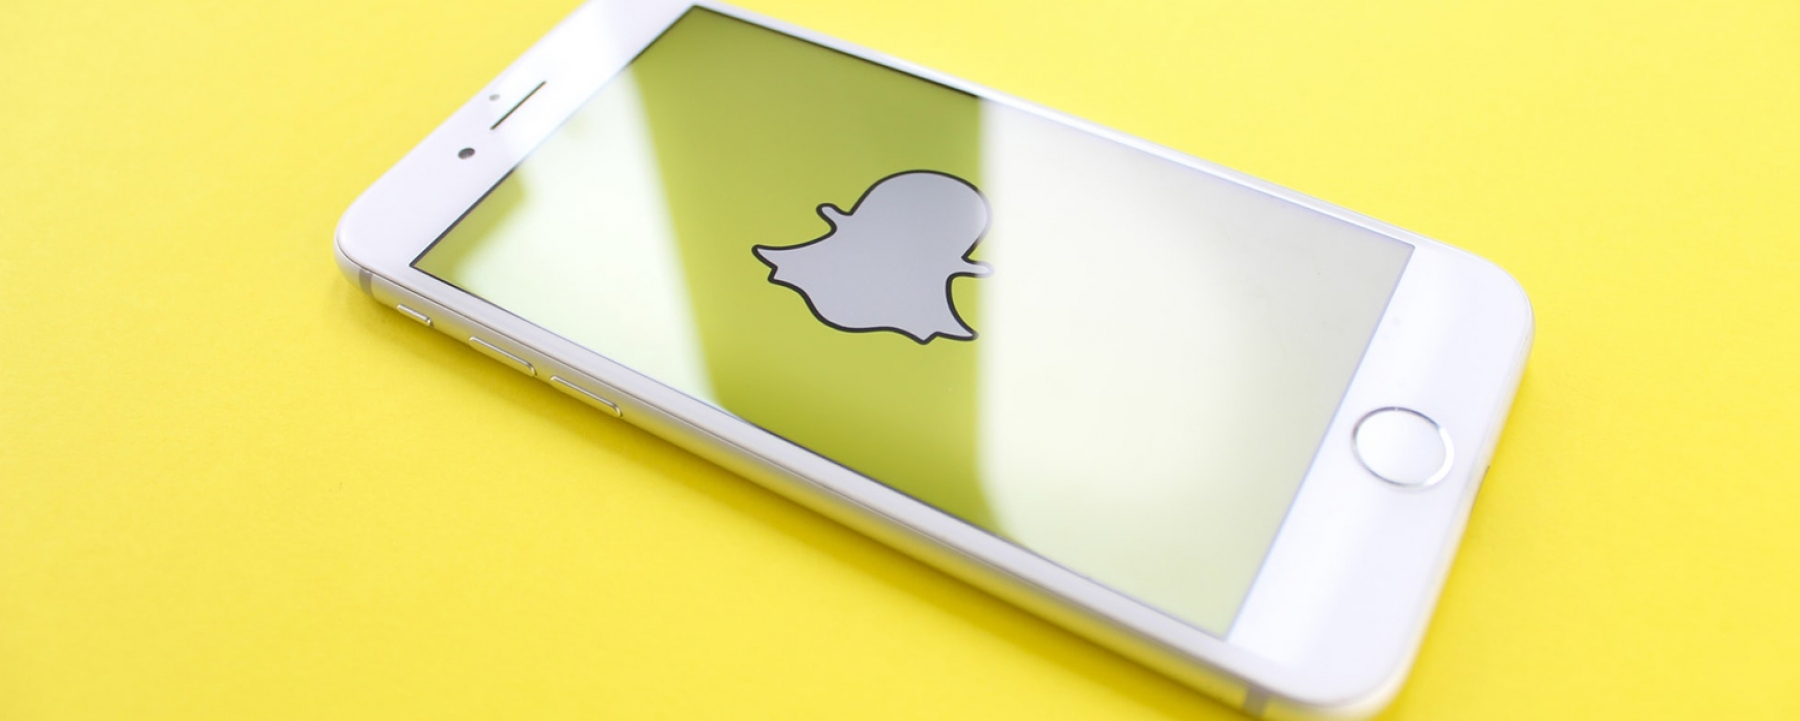 Snapchat, la conversion au cœur de l'innovation, organisé par Snapchat le 25 mai 2021